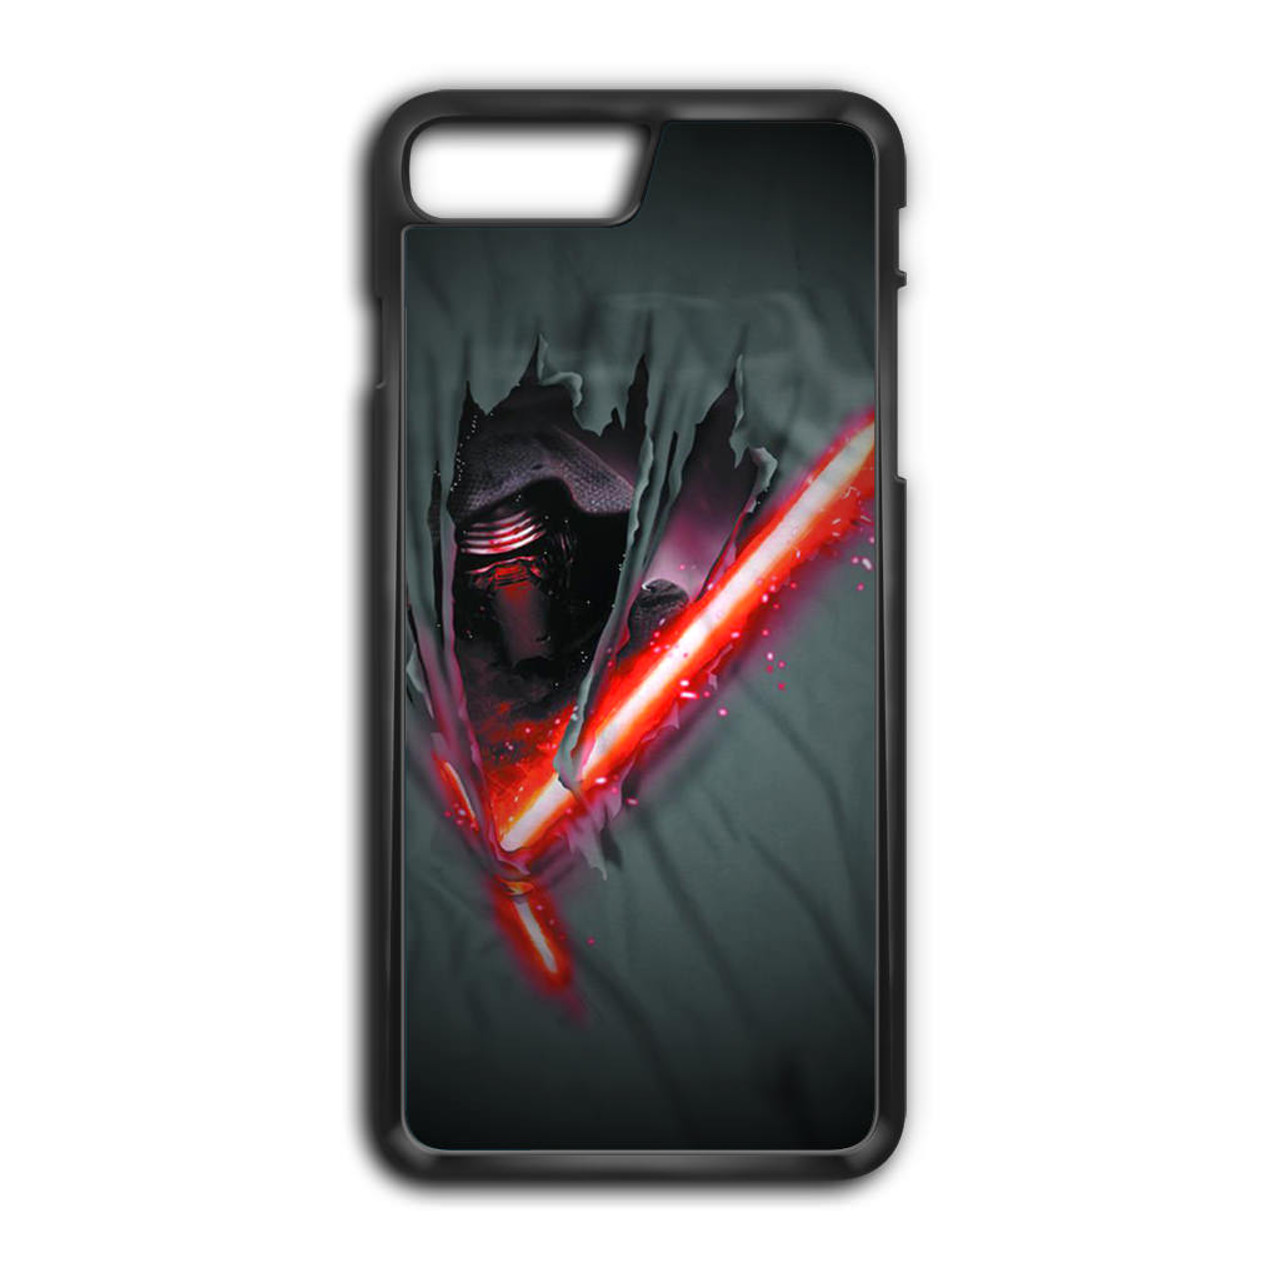 Kylo Ren Star Wars Iphone 8 Plus Case